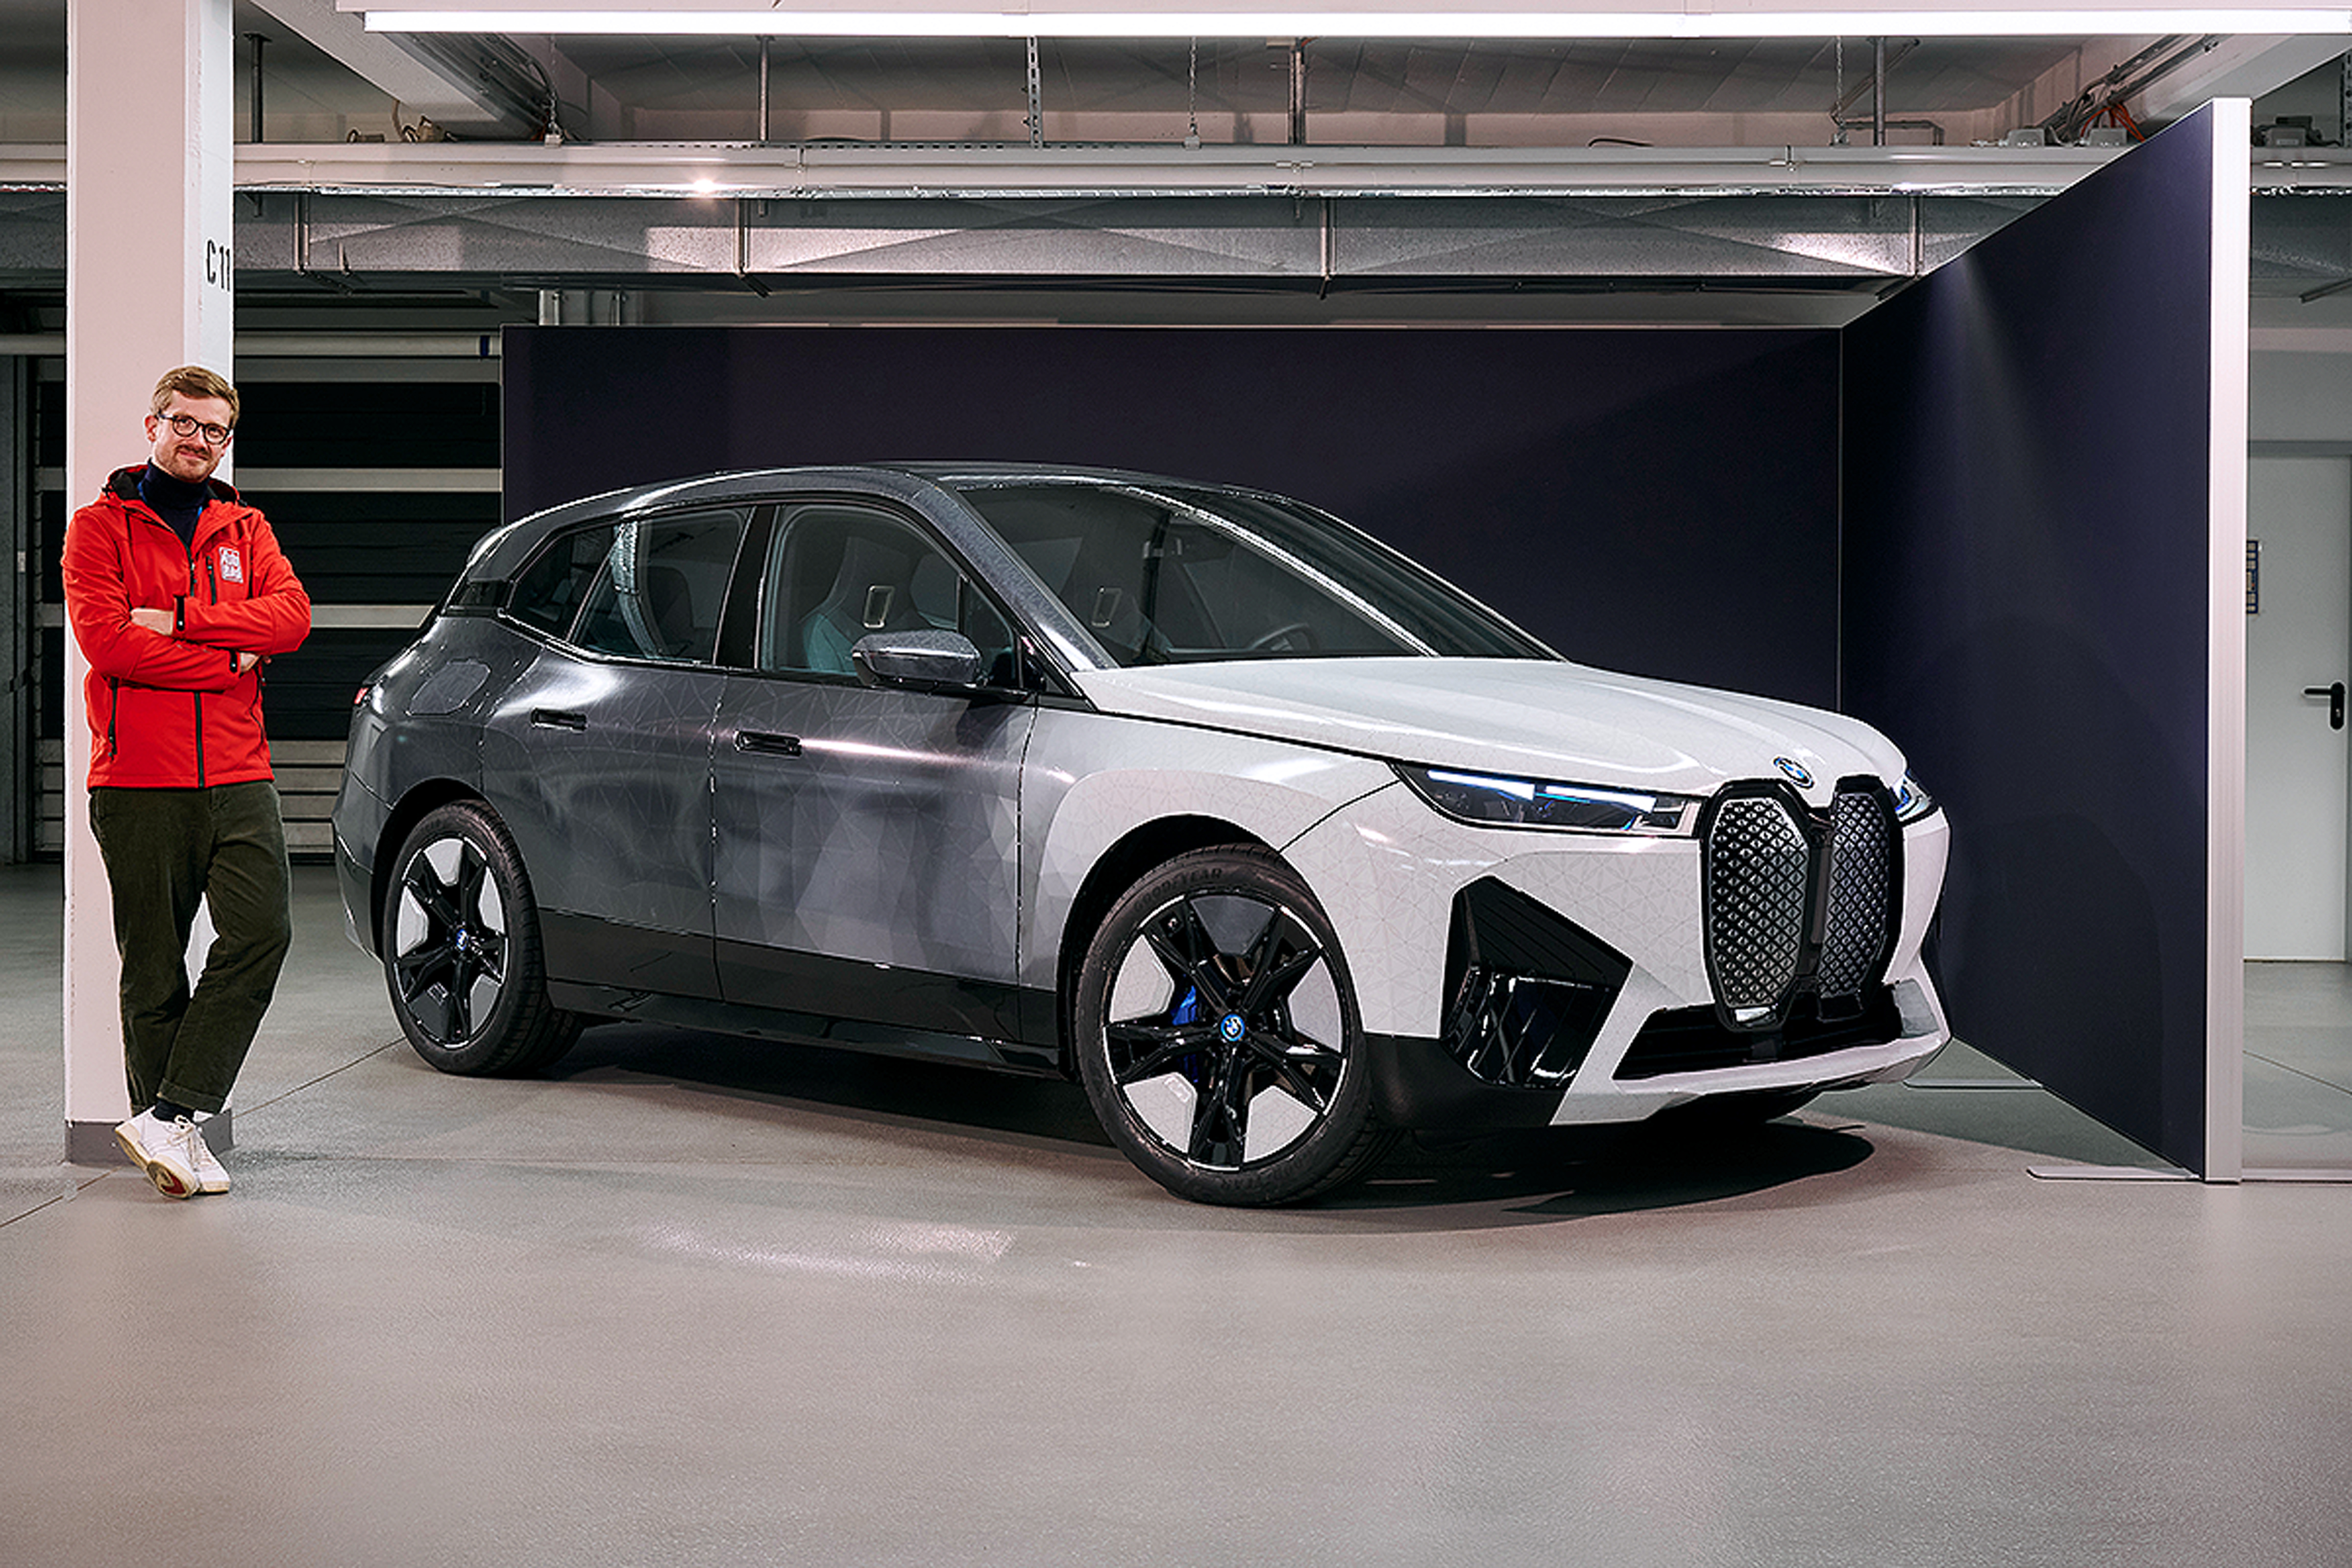 BMW auf CES: Elektroauto iX kann die Farbe mit Smartphone ändern